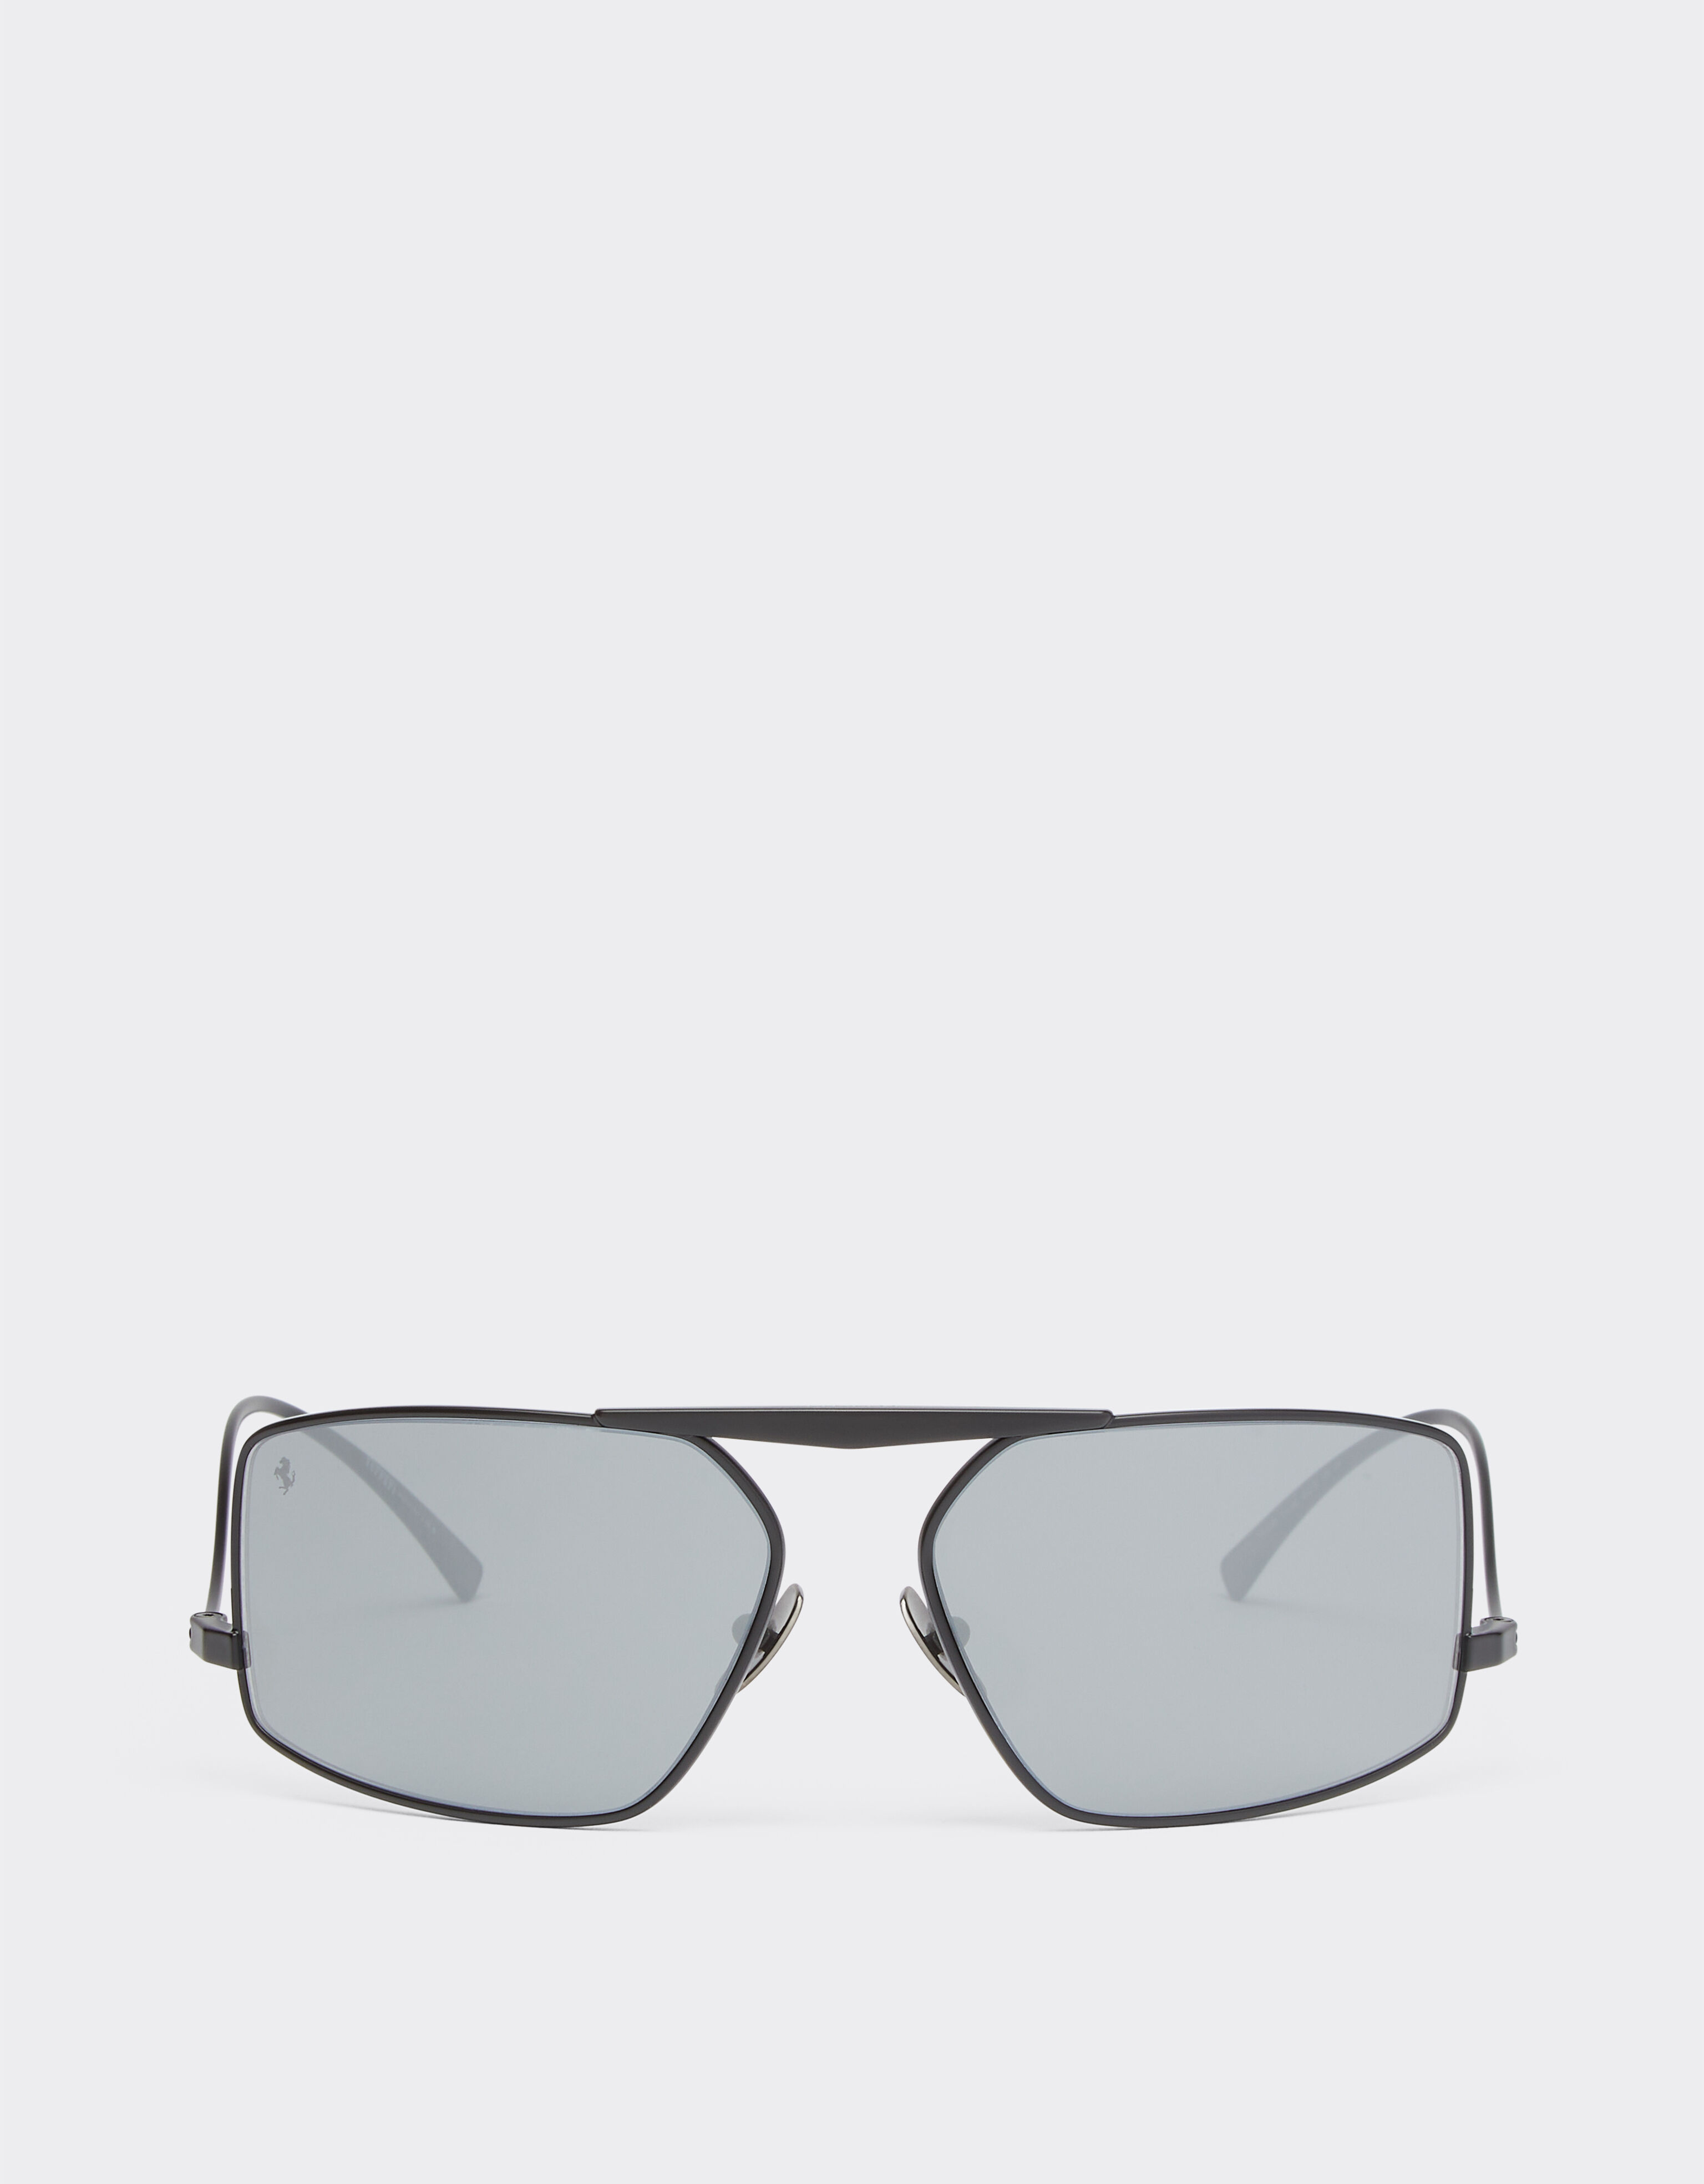 Ferrari Ferrari Sonnenbrille aus schwarzem Metall mit silberfarben verspiegelten Gläsern Ingrid F1255f